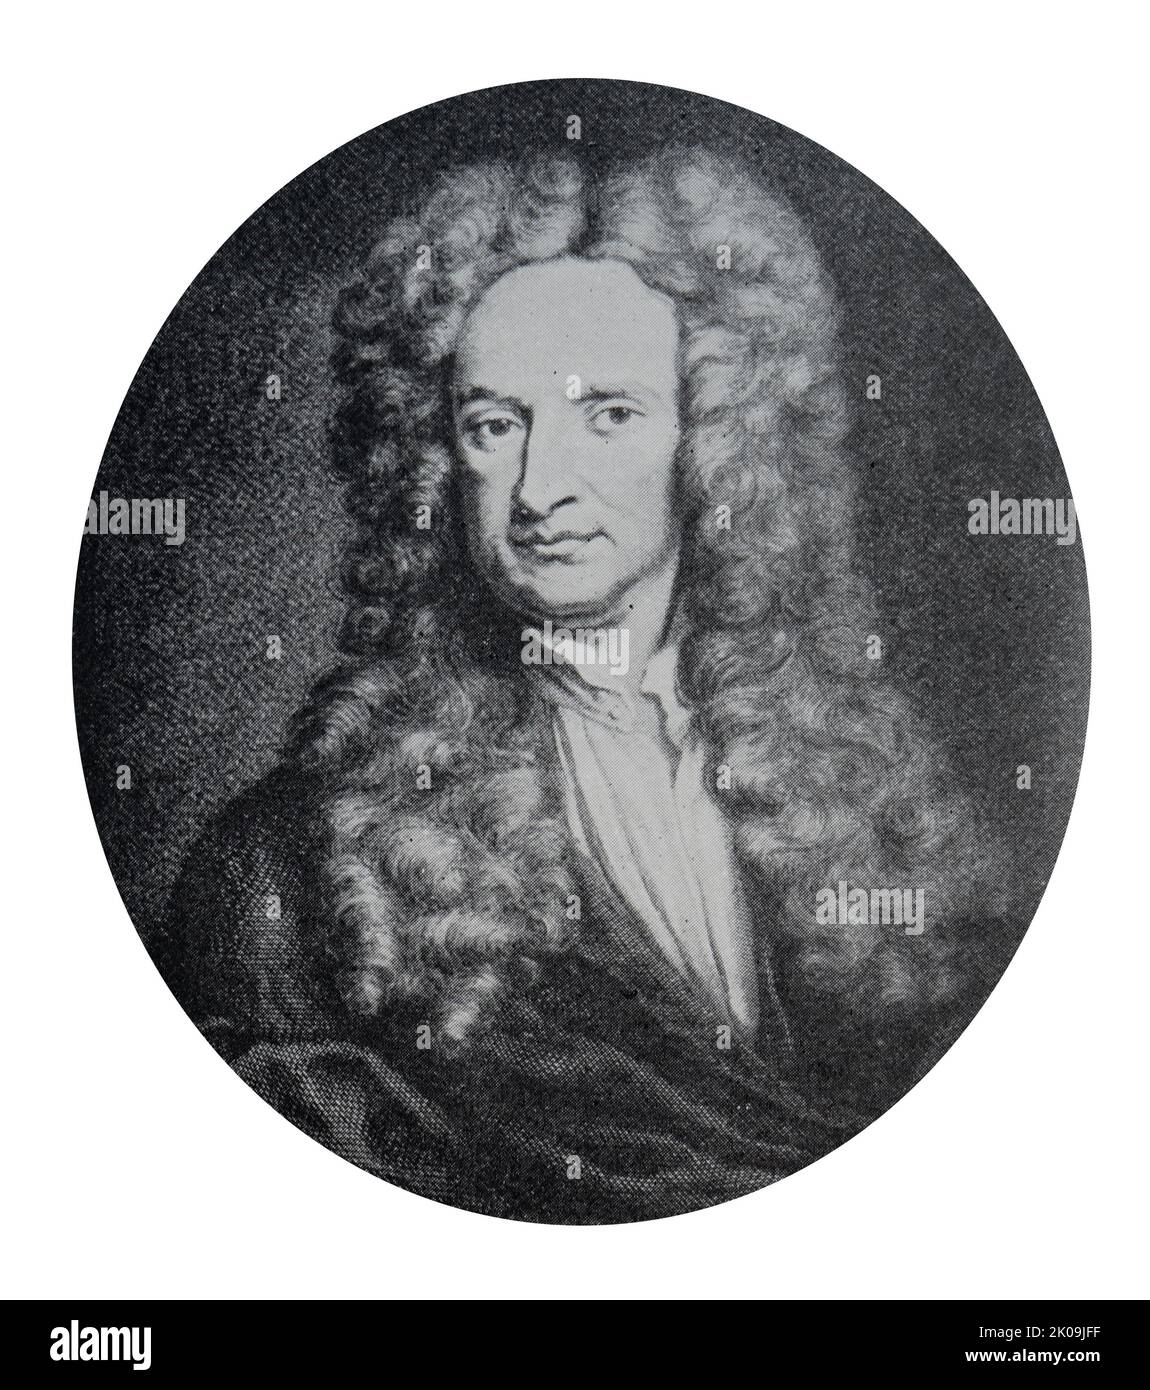 Sir Isaac Newton PRS (25 décembre 1642 - 20 mars 1726) était un mathématicien, physicien, astronome, théologien et auteur anglais largement reconnu comme l'un des plus grands mathématiciens, physiciens et scientifiques les plus influents de tous les temps. Banque D'Images